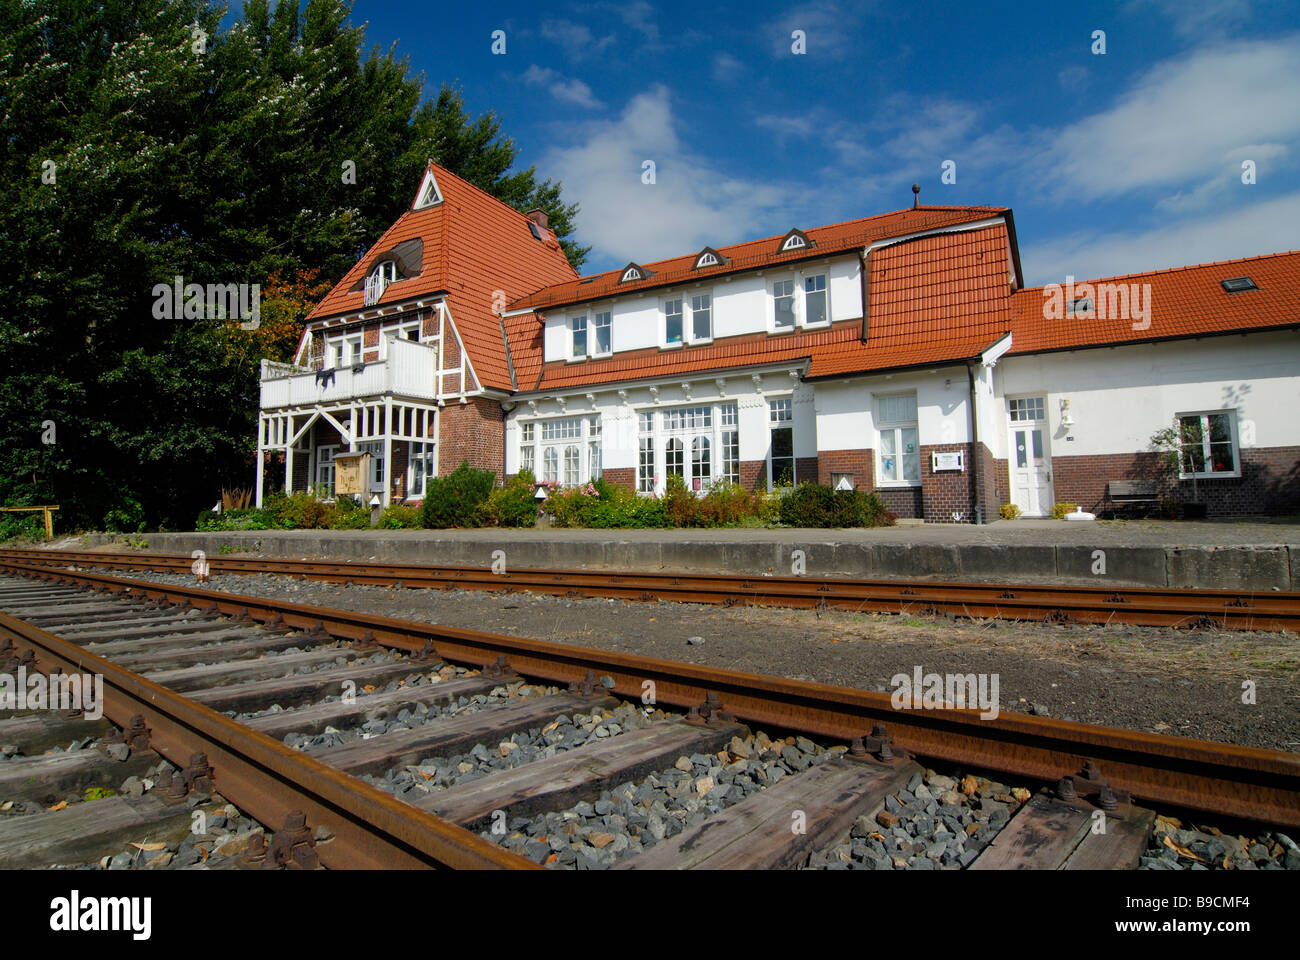 Gare ferroviaire historique dans le sud de Bergedorf, à Hambourg. Banque D'Images